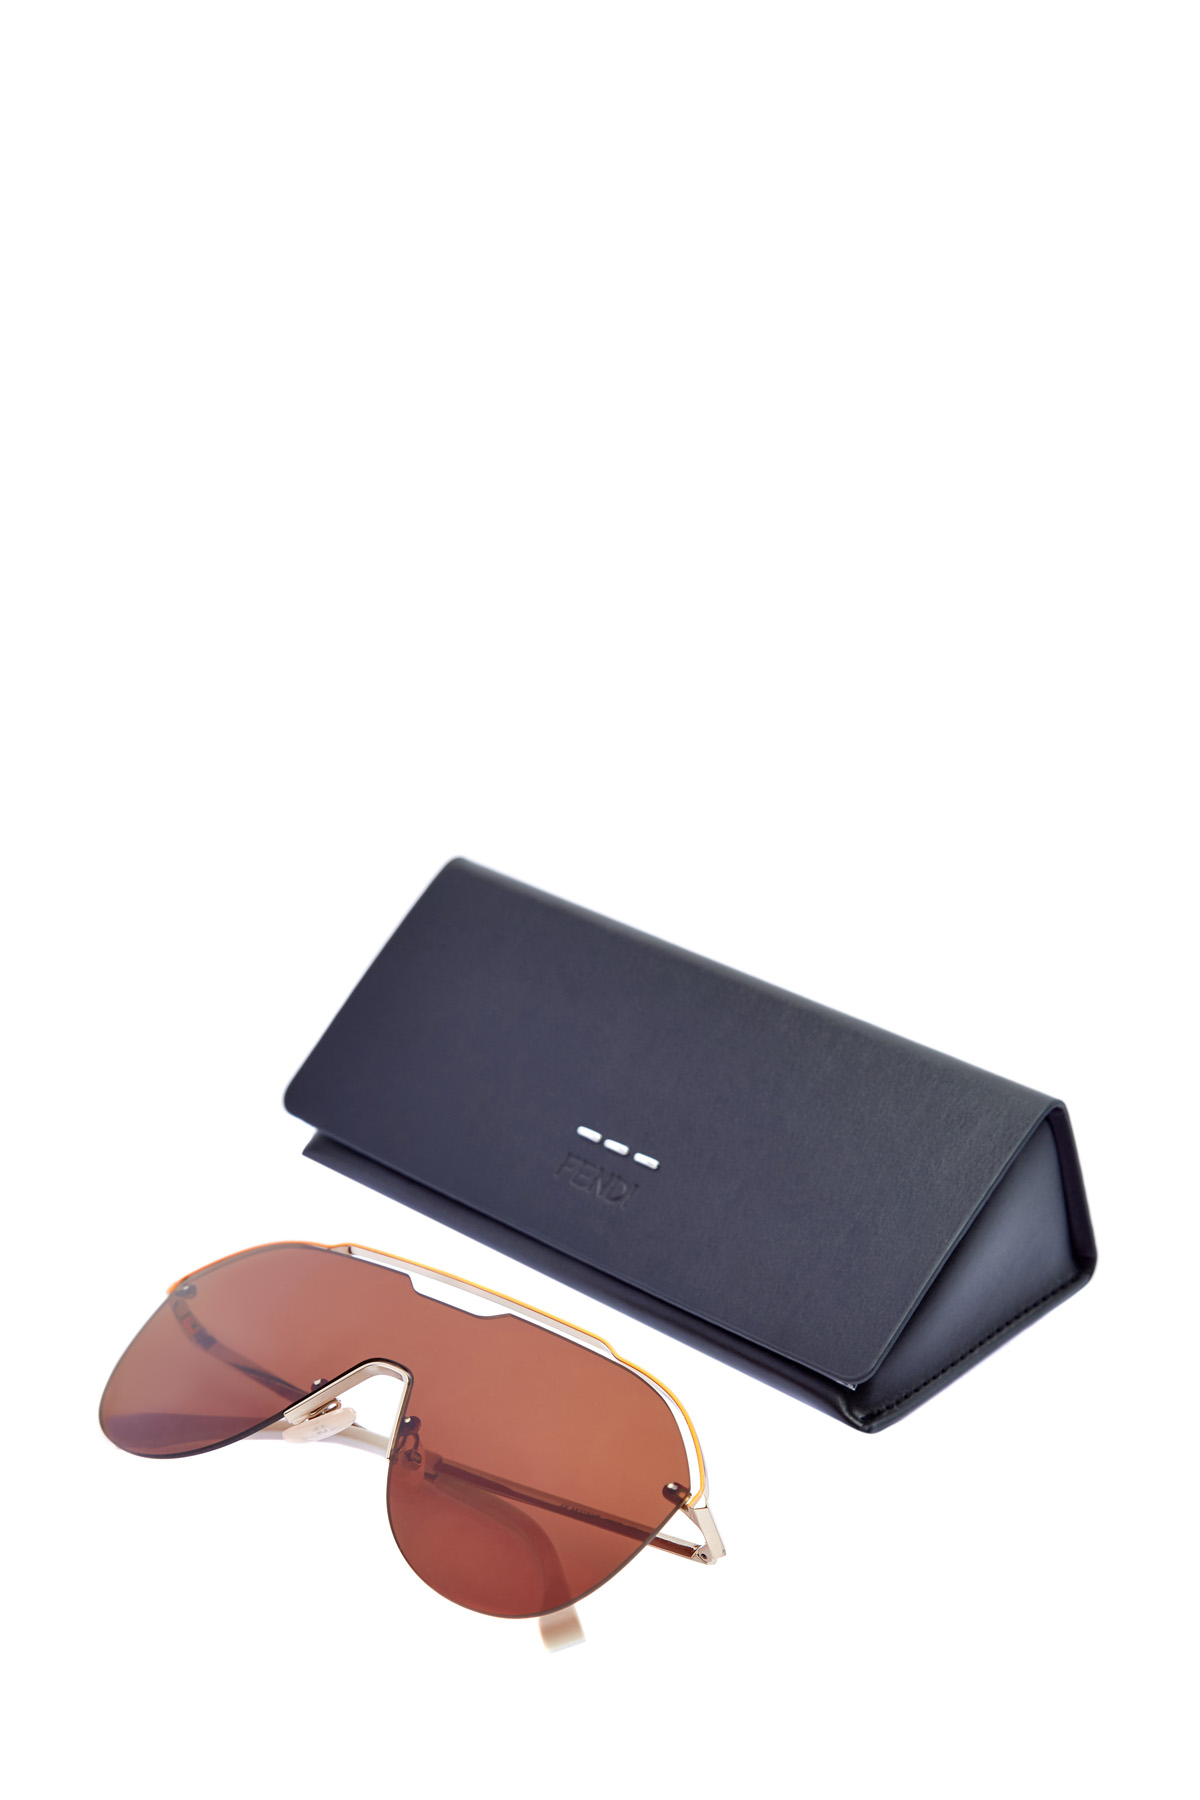 Очки-маска в графичной металлической оправе авиатор FENDI (sunglasses), цвет коричневый, размер XS;S - фото 5